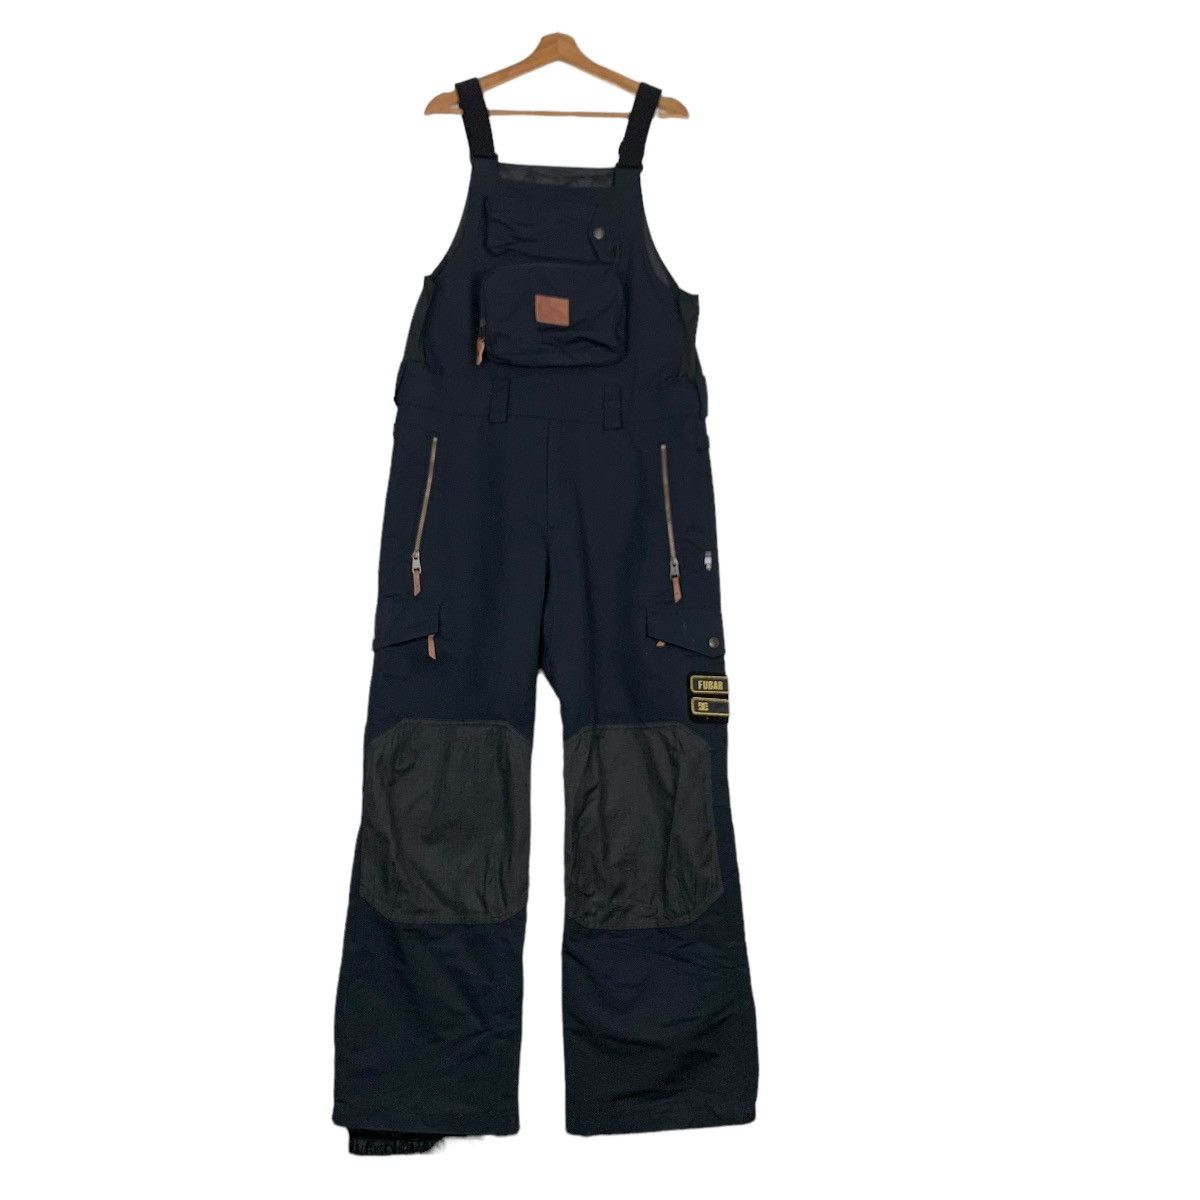 Dc - D.C. SHOE Waterproof Ski Wear Overalls #0055-C4 - 1